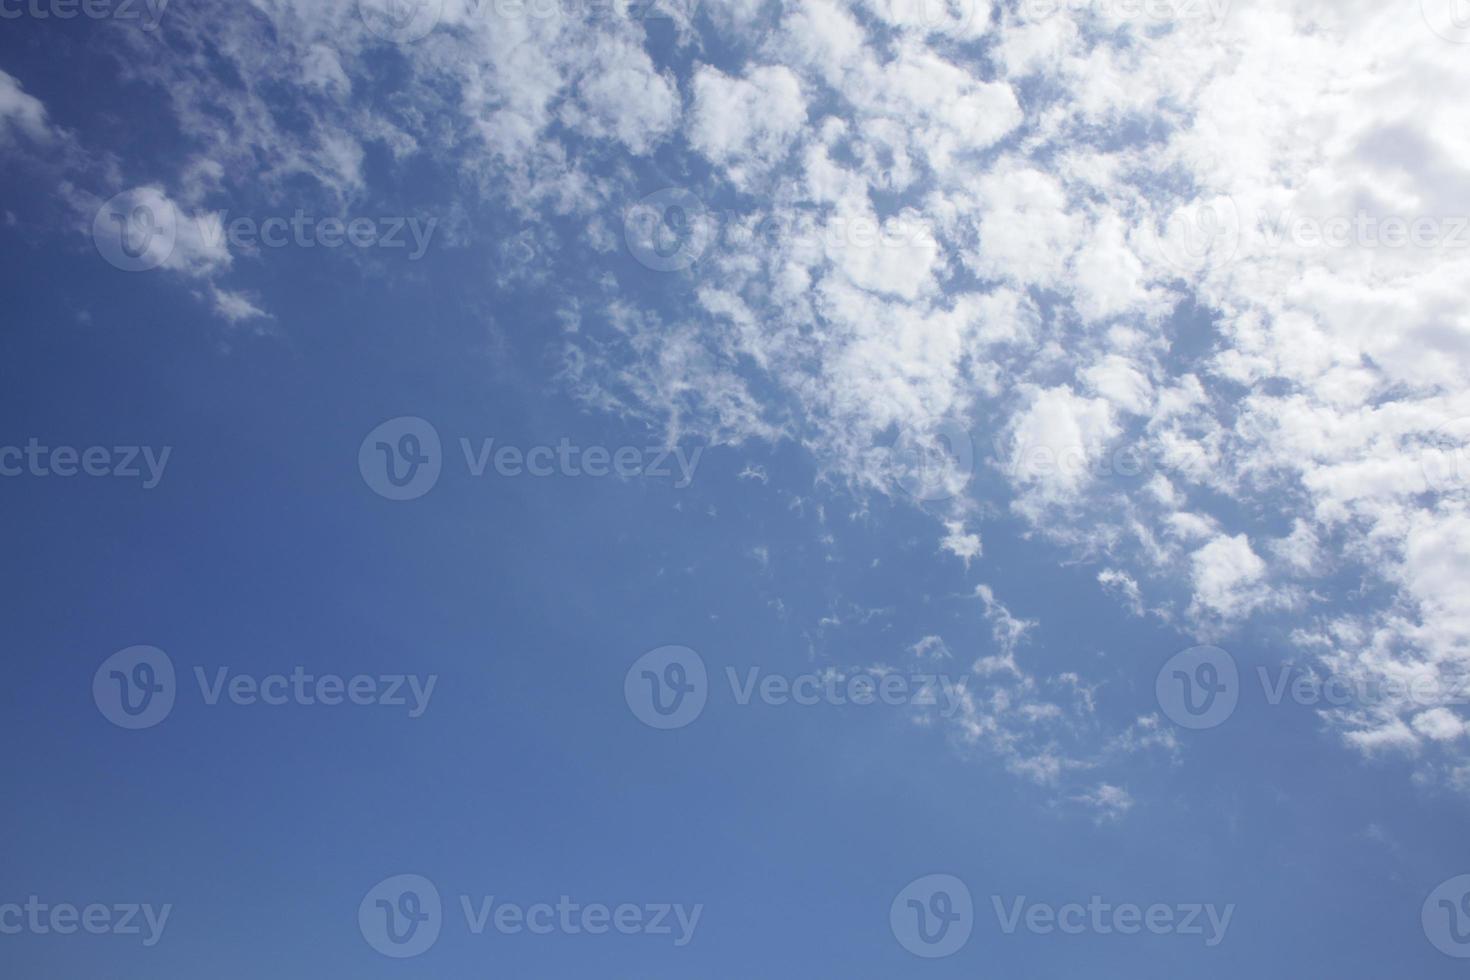 céu de verão com nuvens fundo impressões modernas de alta qualidade foto